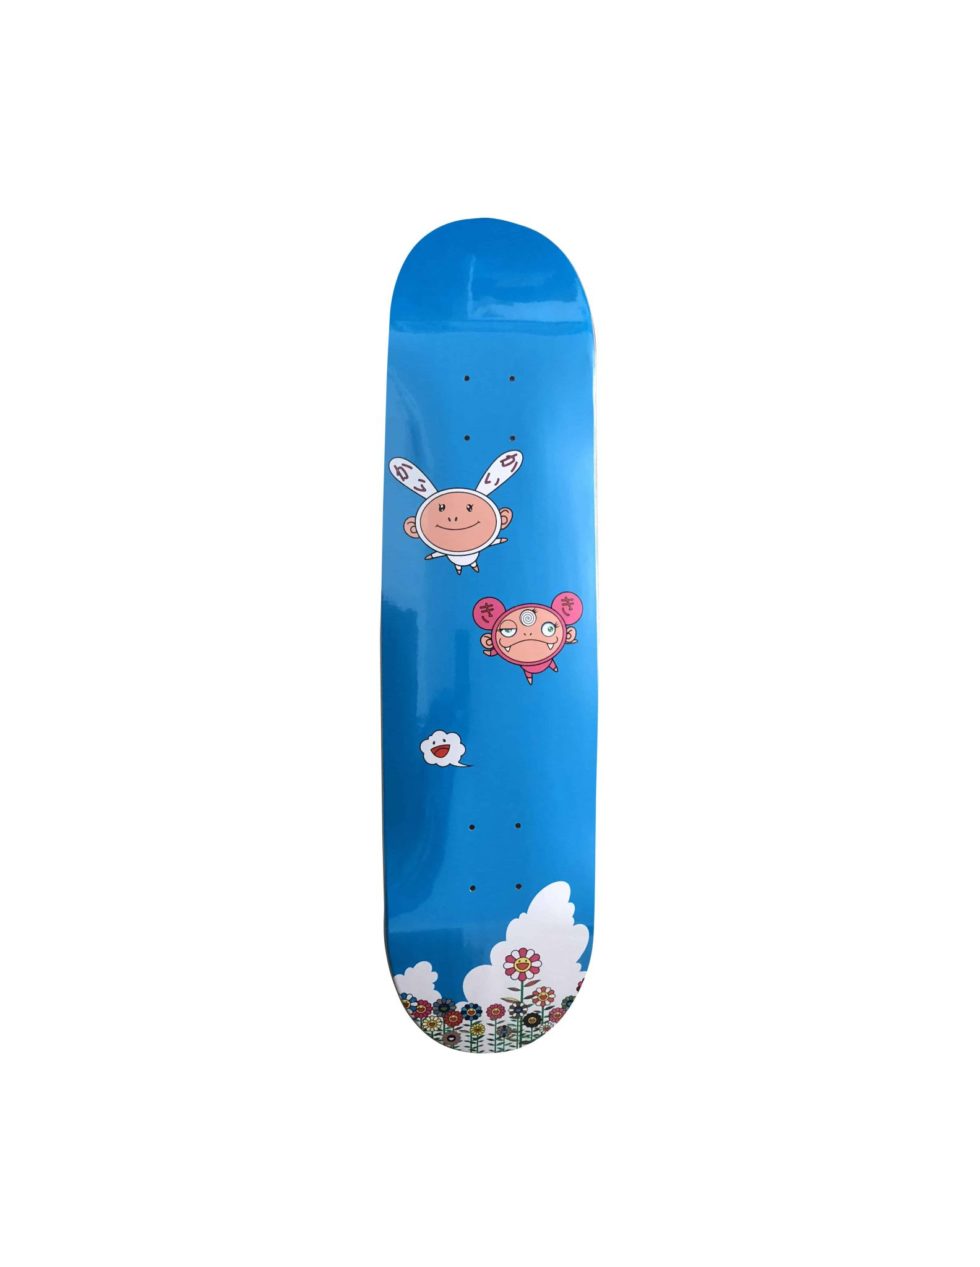 Lot #15114 – Takashi Murakami x Kaikai Kiki Cloud Flying in the Sky Skateboard Skate Deck Skateboard Decks ComplexCon